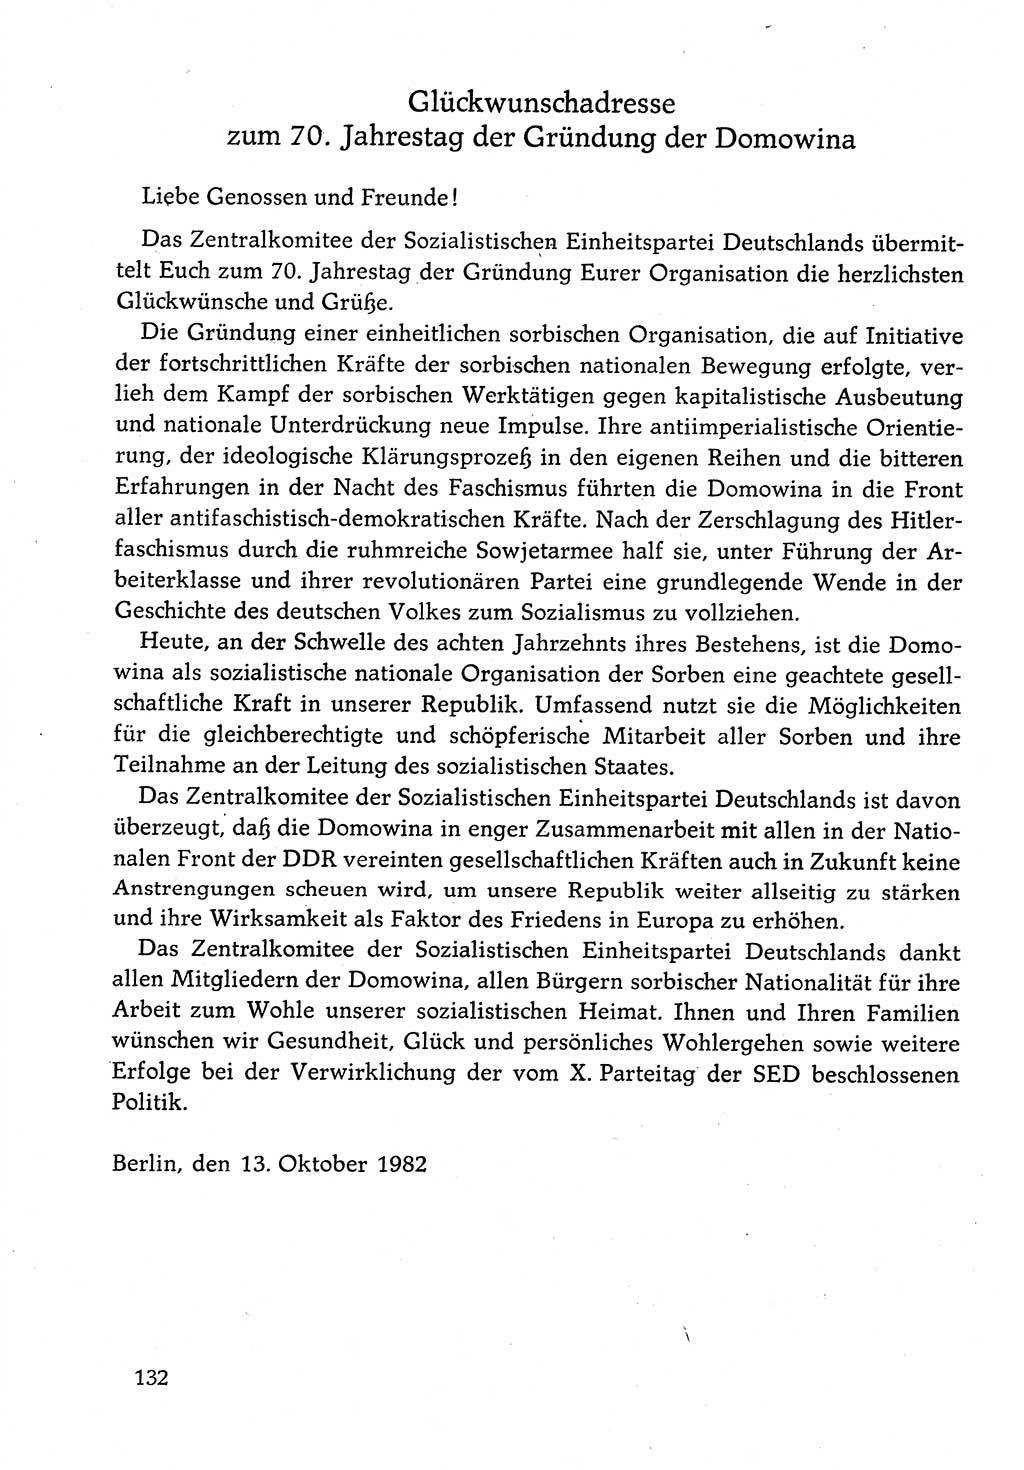 Dokumente der Sozialistischen Einheitspartei Deutschlands (SED) [Deutsche Demokratische Republik (DDR)] 1982-1983, Seite 132 (Dok. SED DDR 1982-1983, S. 132)